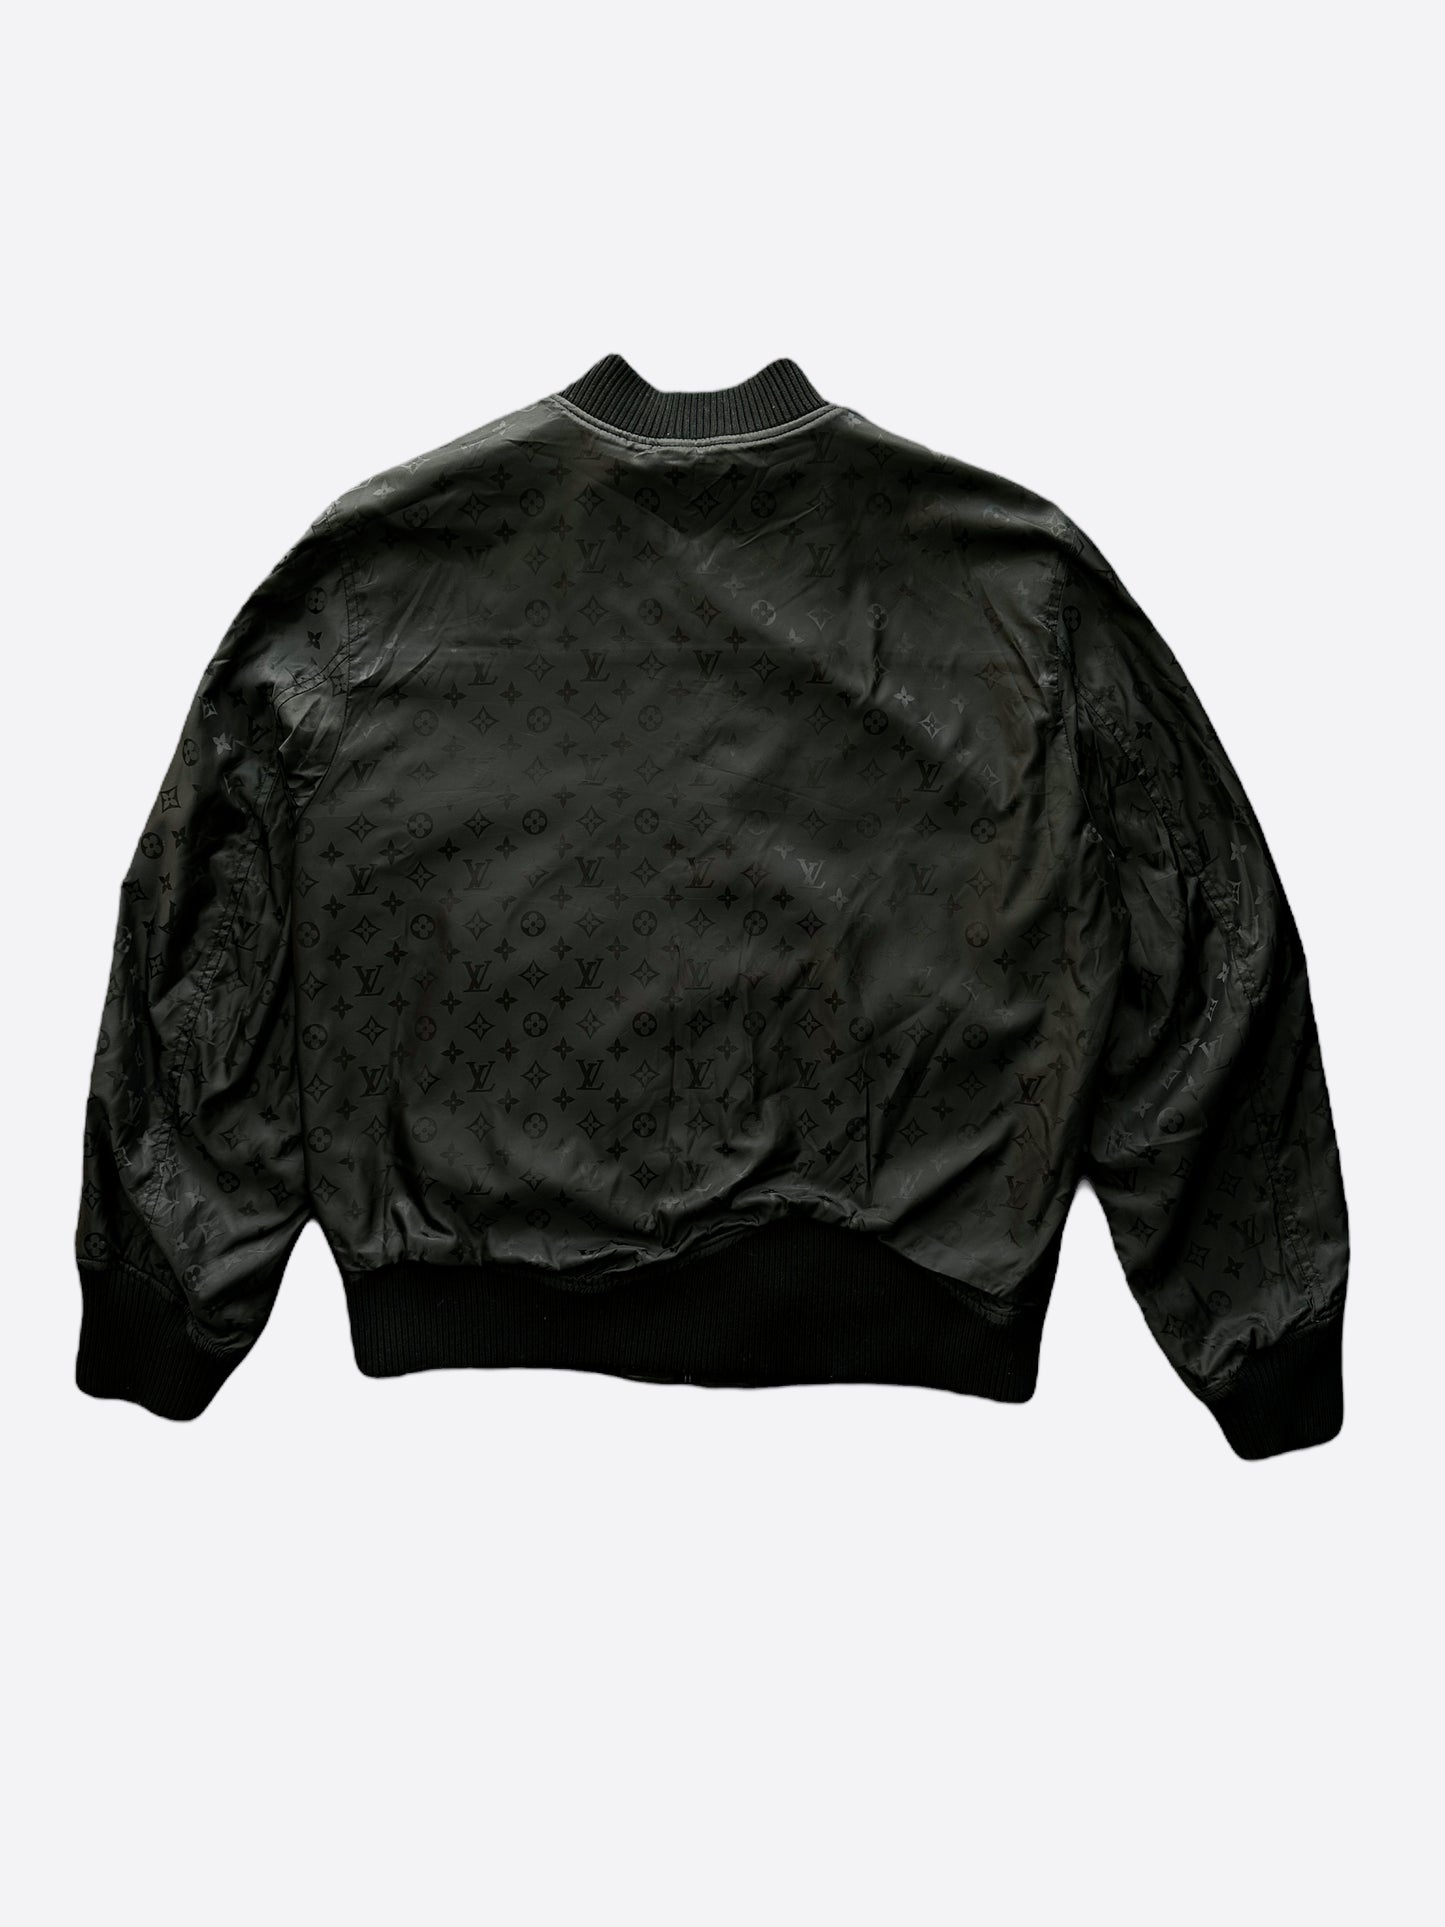 black leather louis vuitton jacket